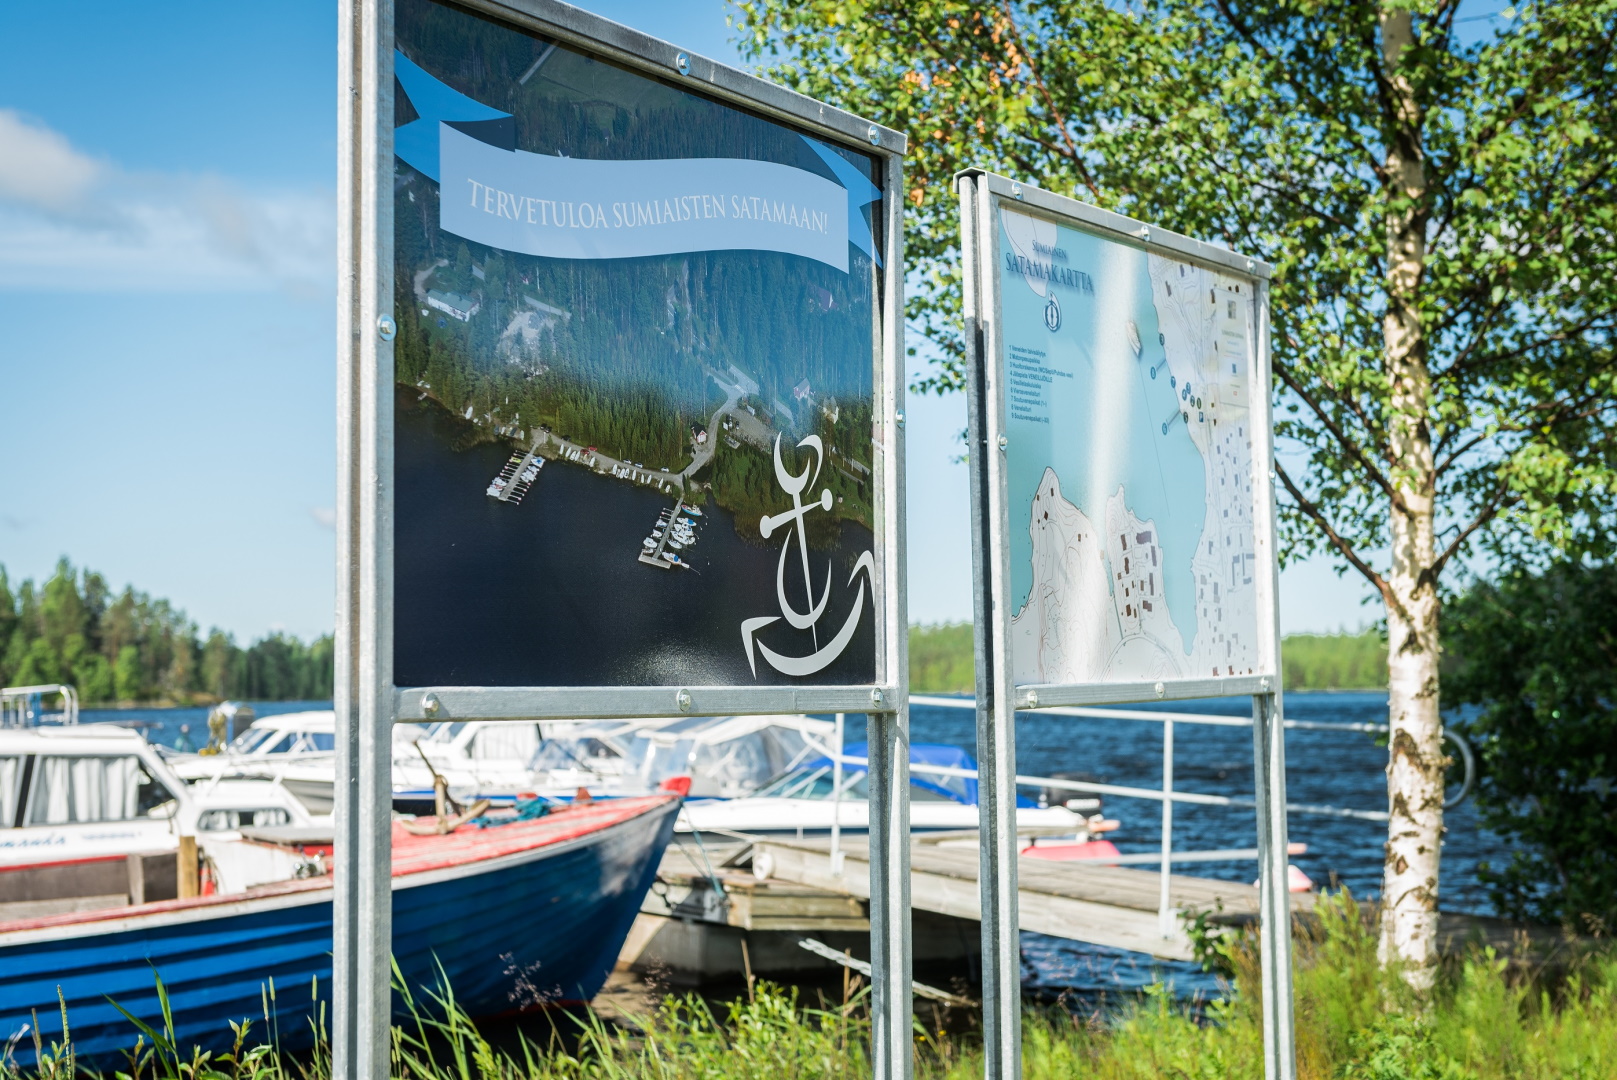 Kuva: Mikko Suutala. Kartta ja ilmoitustaulu Sumiaisten satamassa